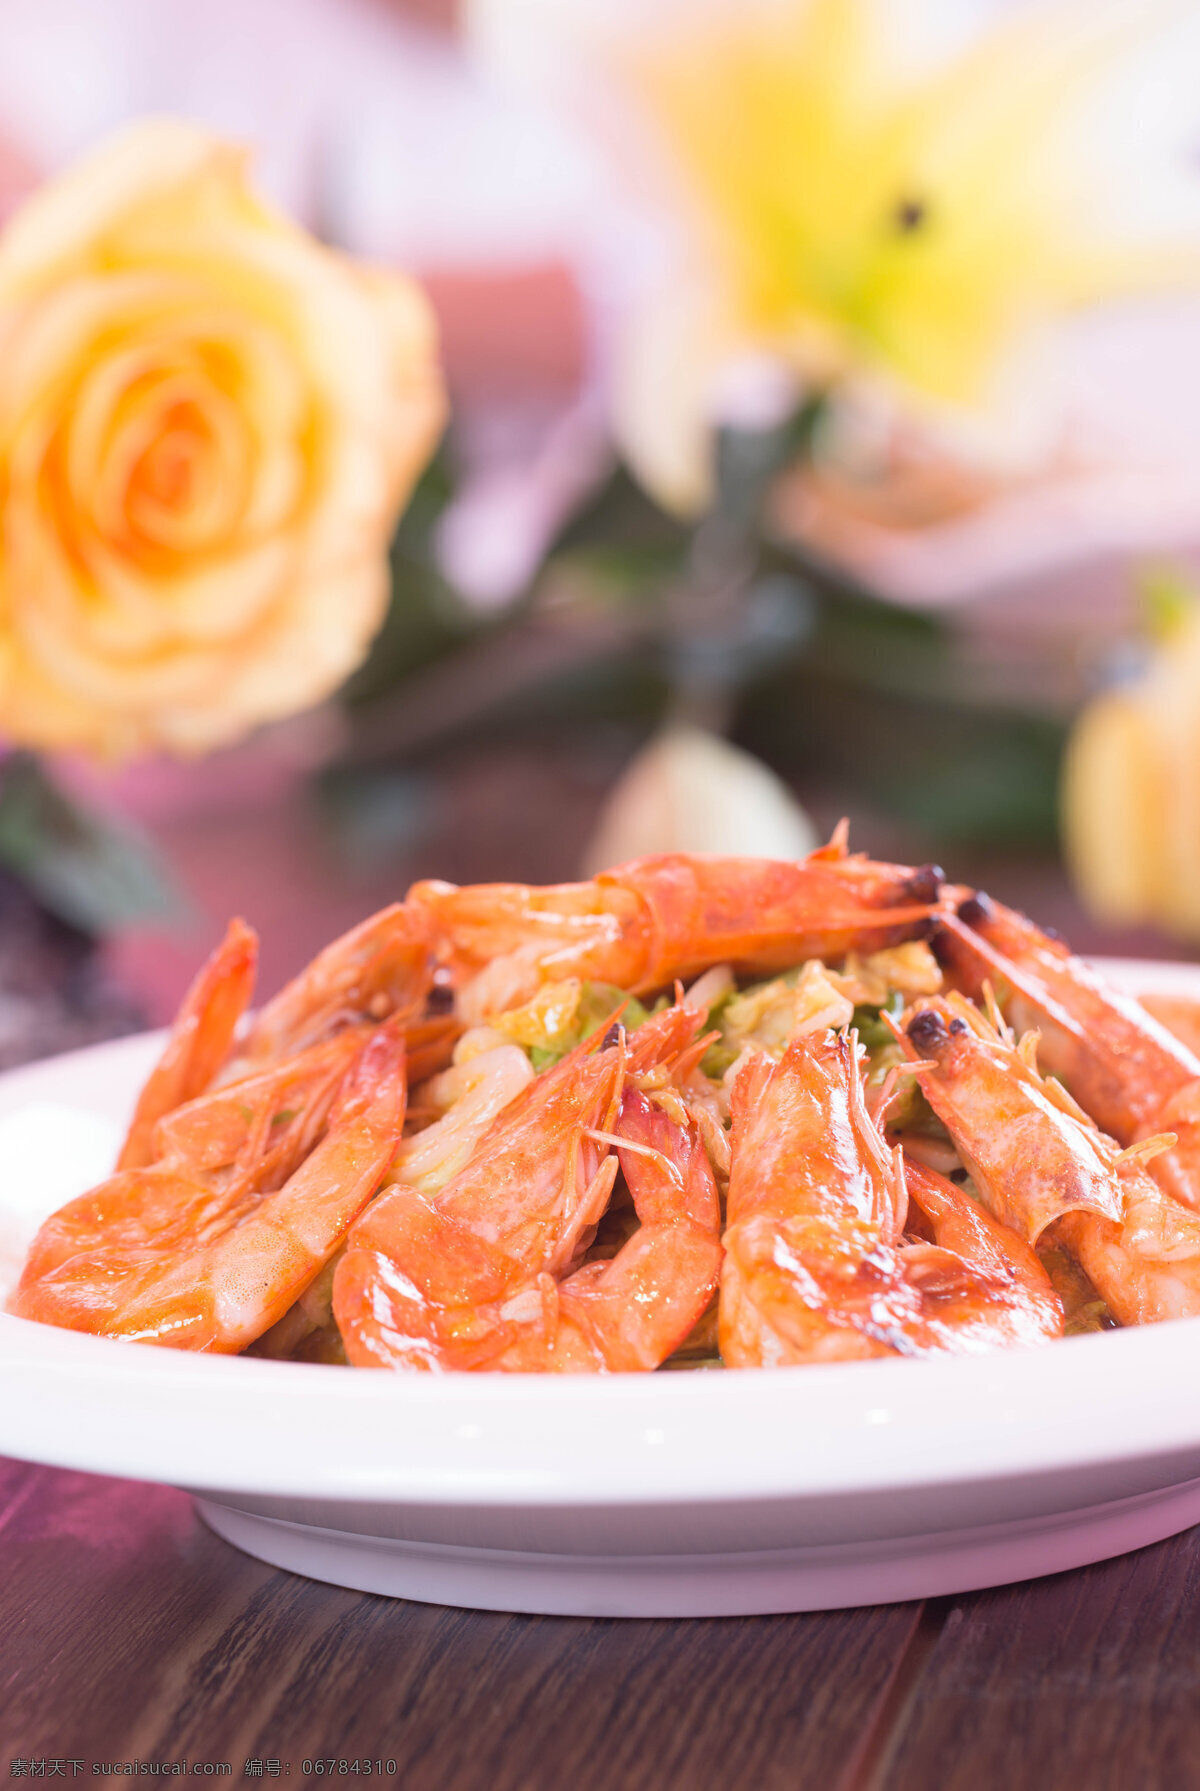 海鲜拼 菜品图 菜品 菜谱 特色菜 美味 美食 餐饮美食 传统美食